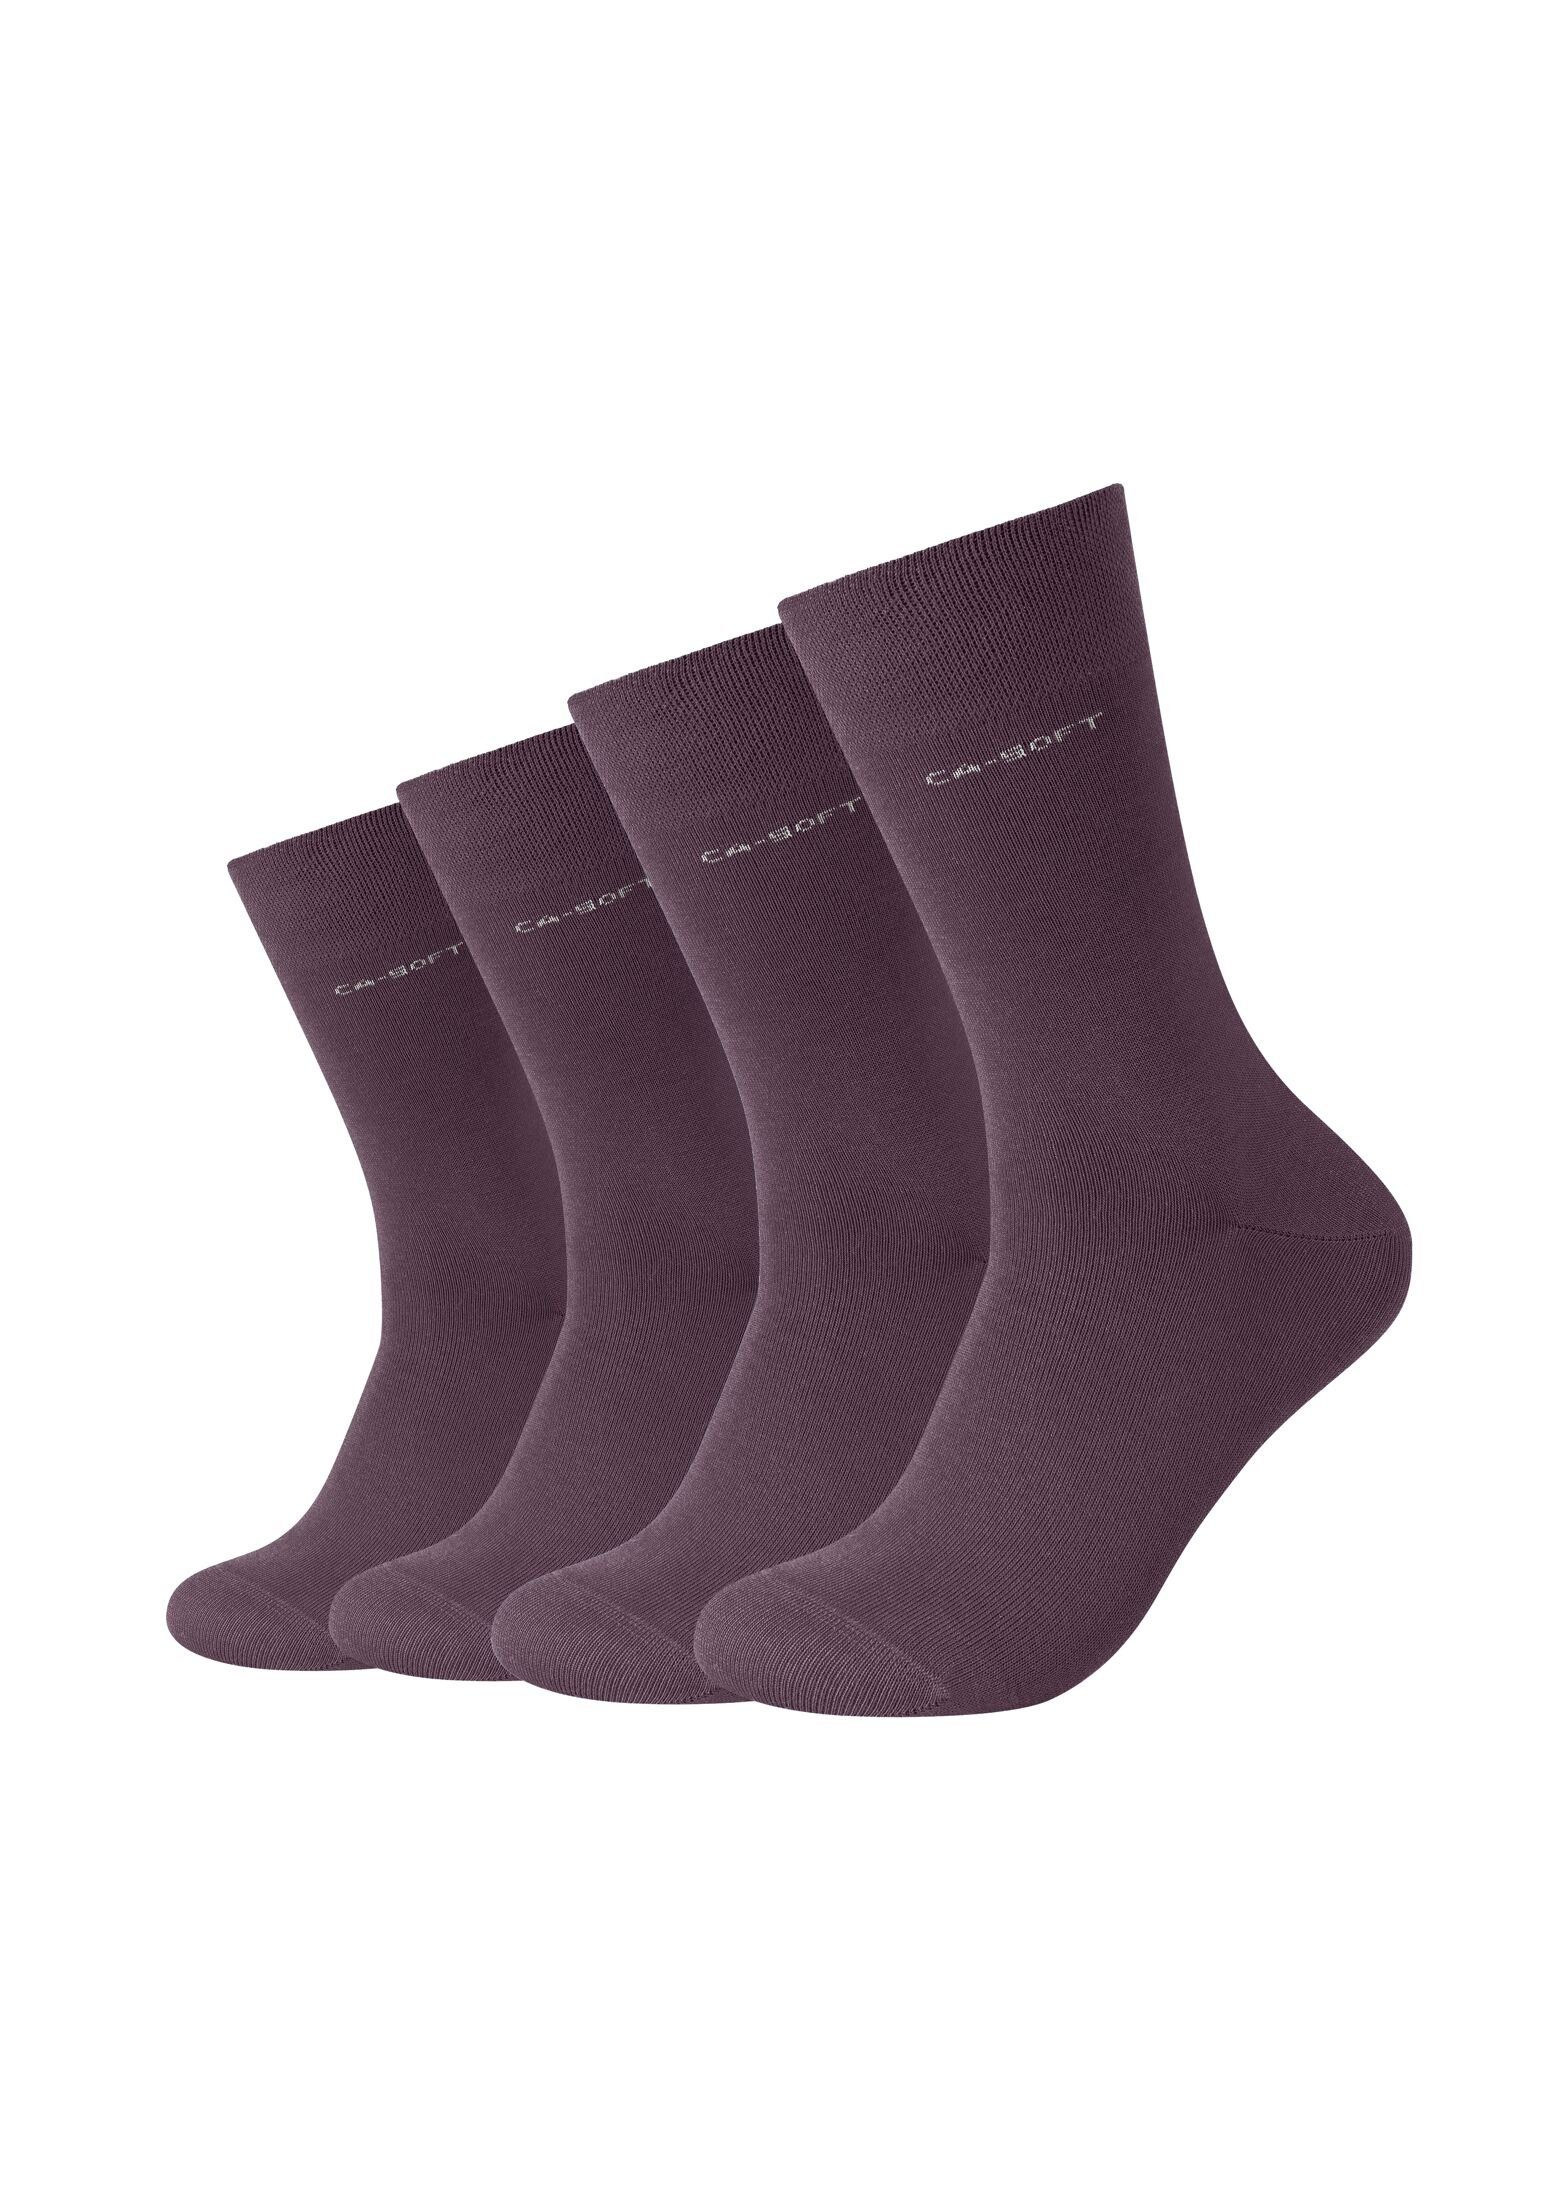 Camano Socken Socken für Damen und Herren Businesssocken Komfortbund Bequem potent purple